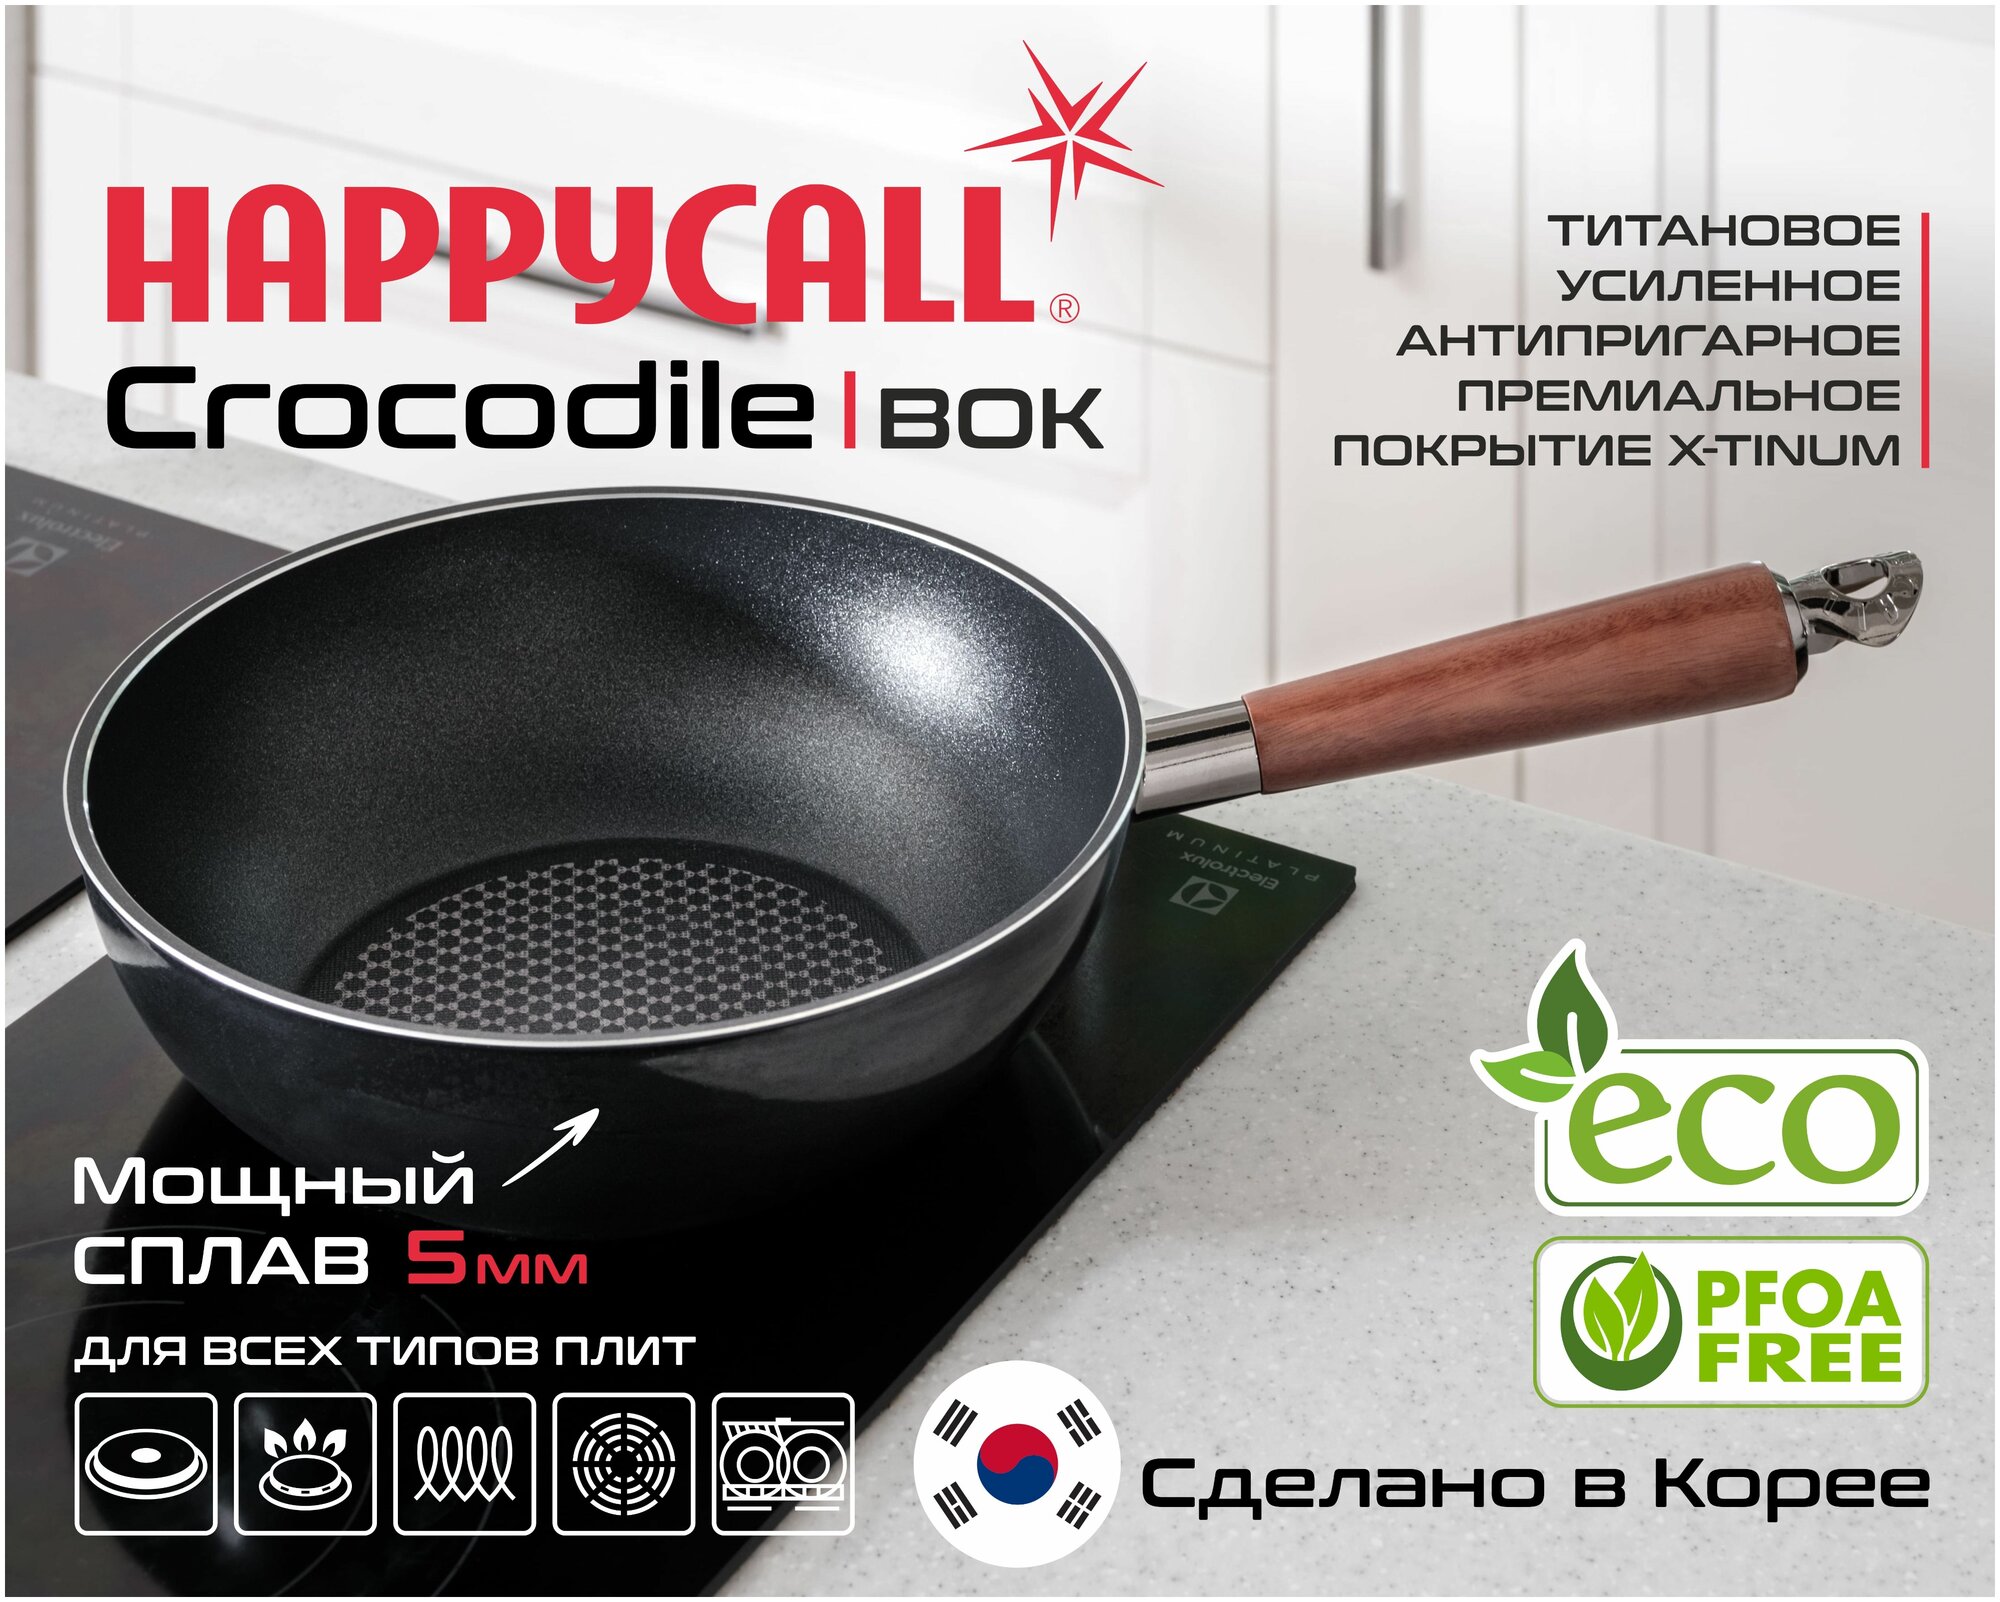 ВОК Happycall Crocodile 30см